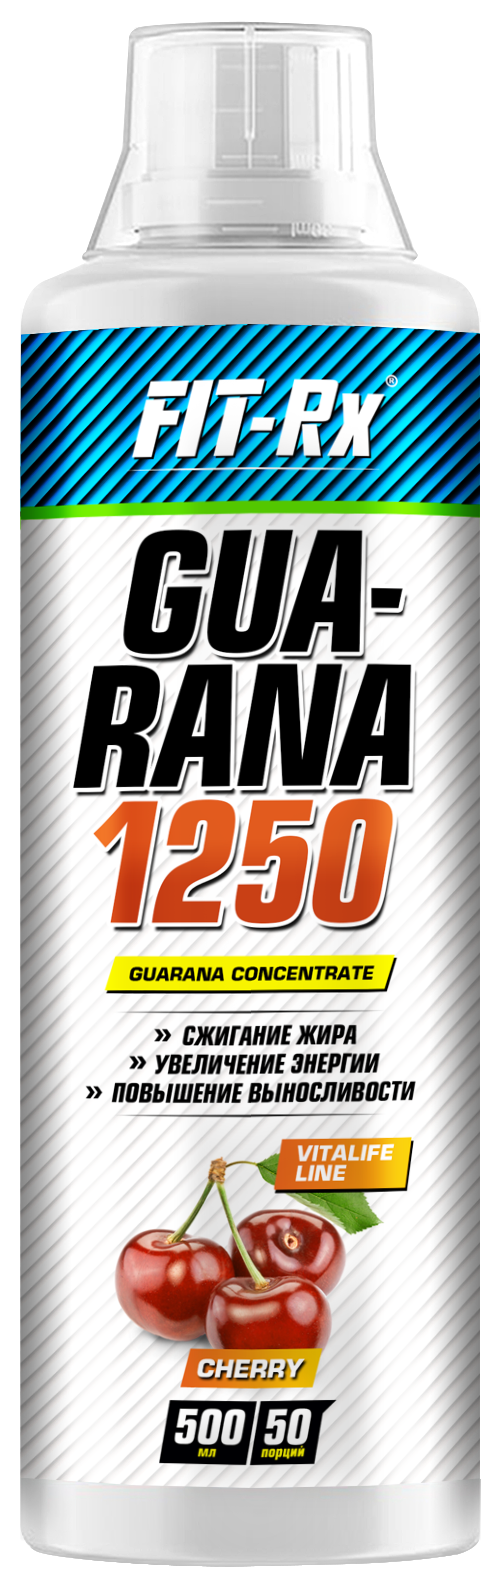 Напиток для спорта Guarana 1250, вкус вишня, 500 мл,  Fit-Rx